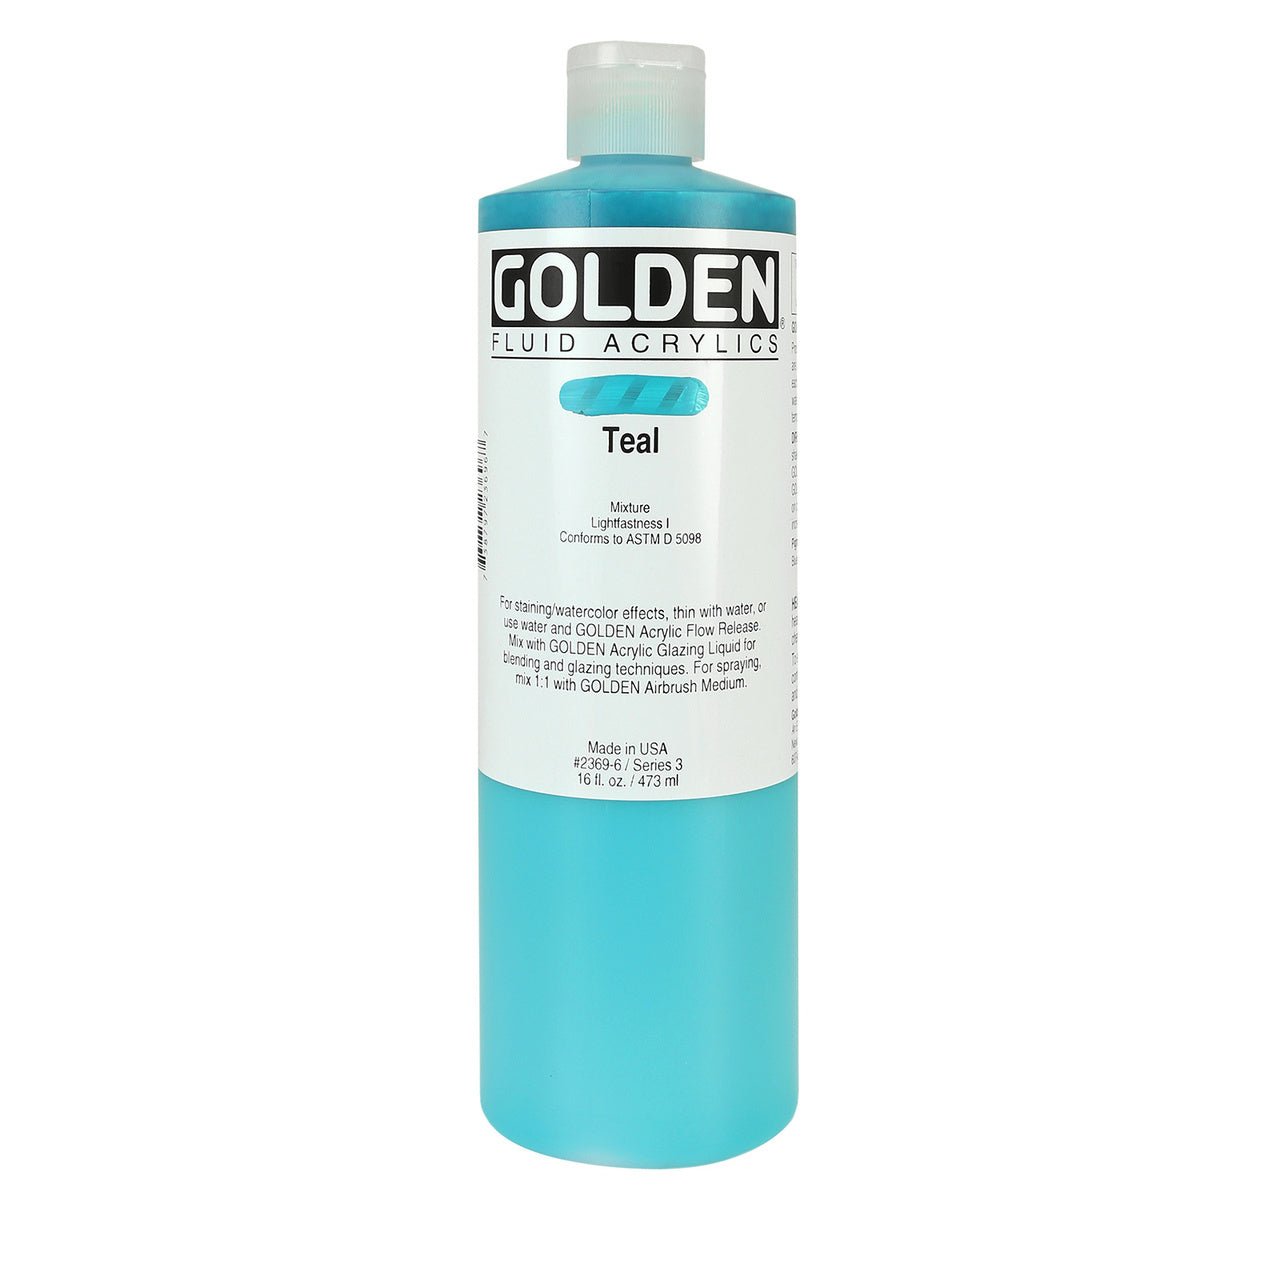 Golden Fluid Acrylic Teal 16 oz - merriartist.com